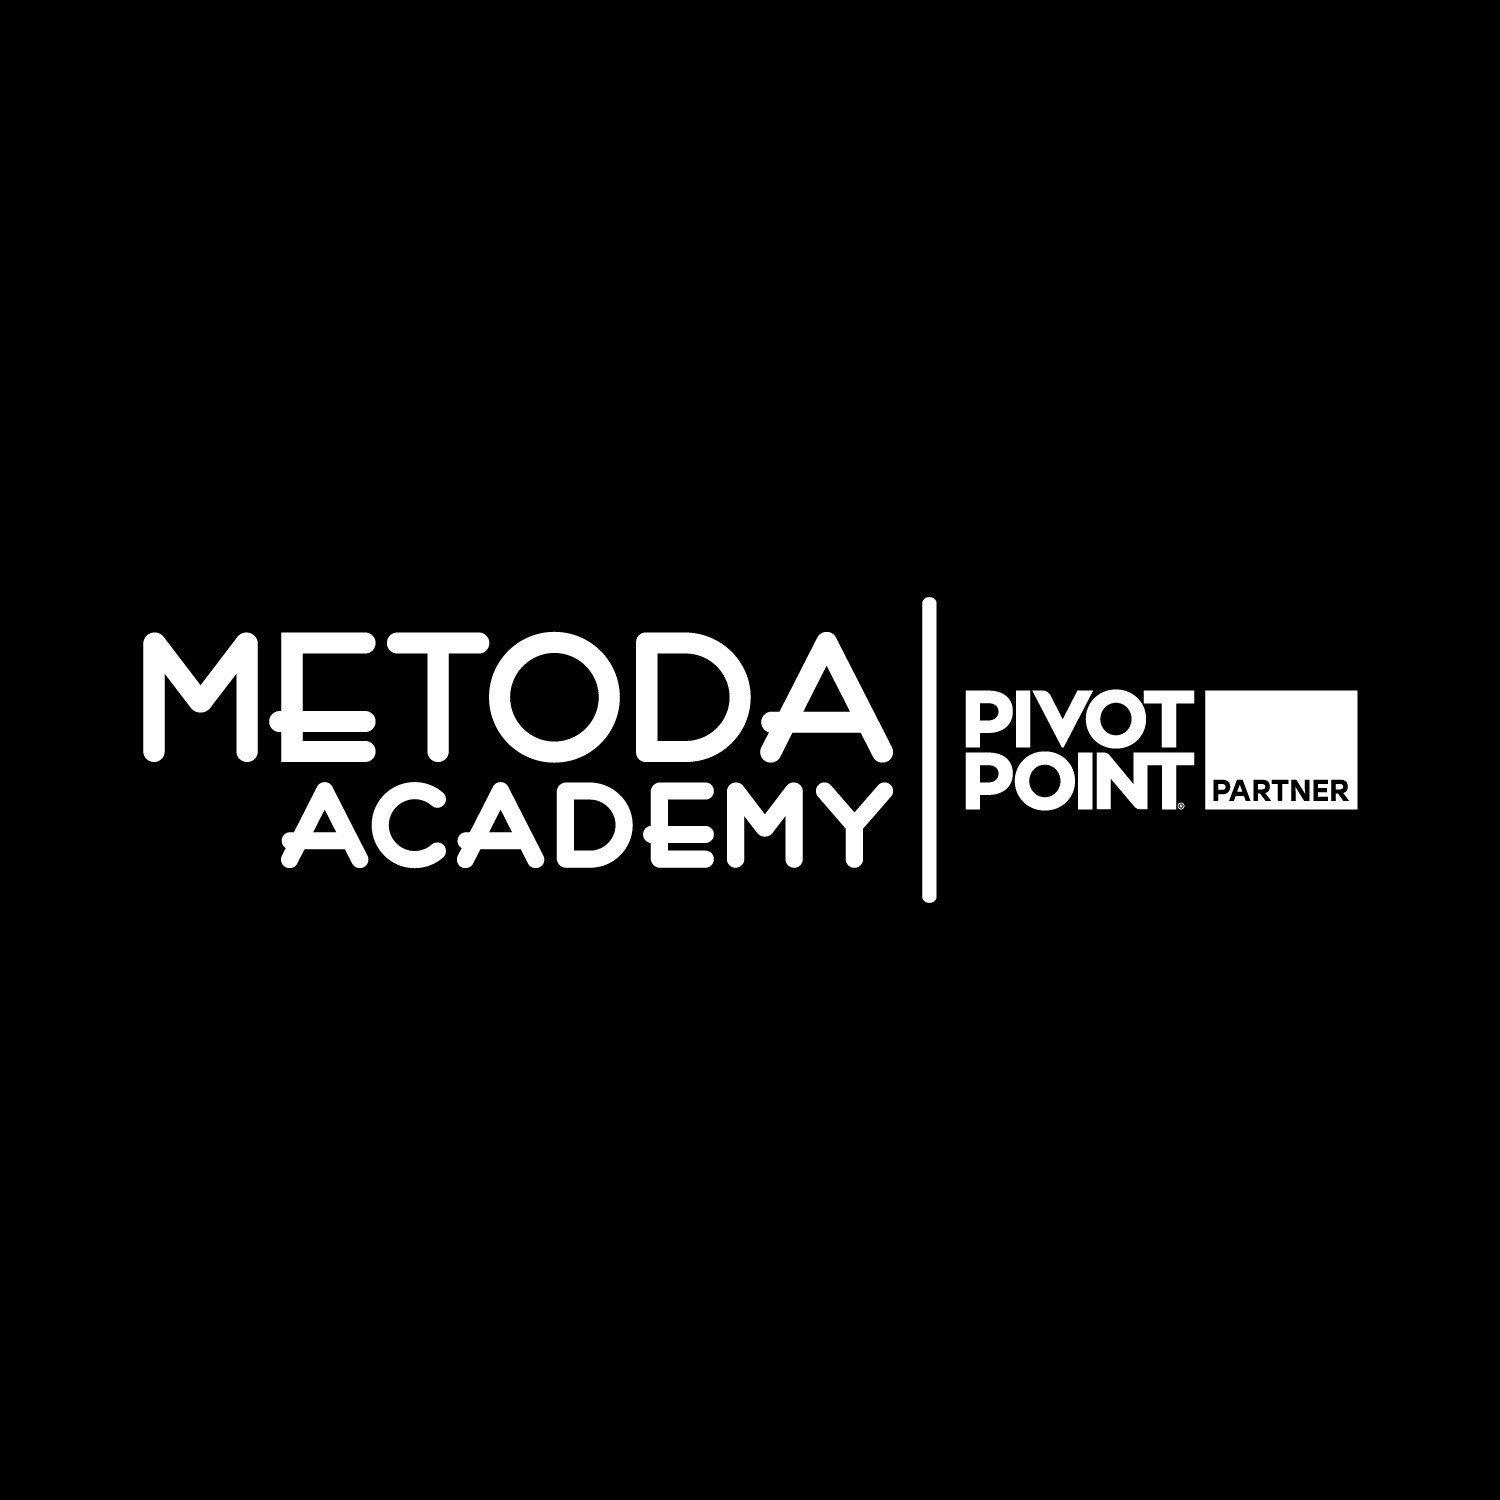 Академия парикмахерского искусства Метода Pivot Point